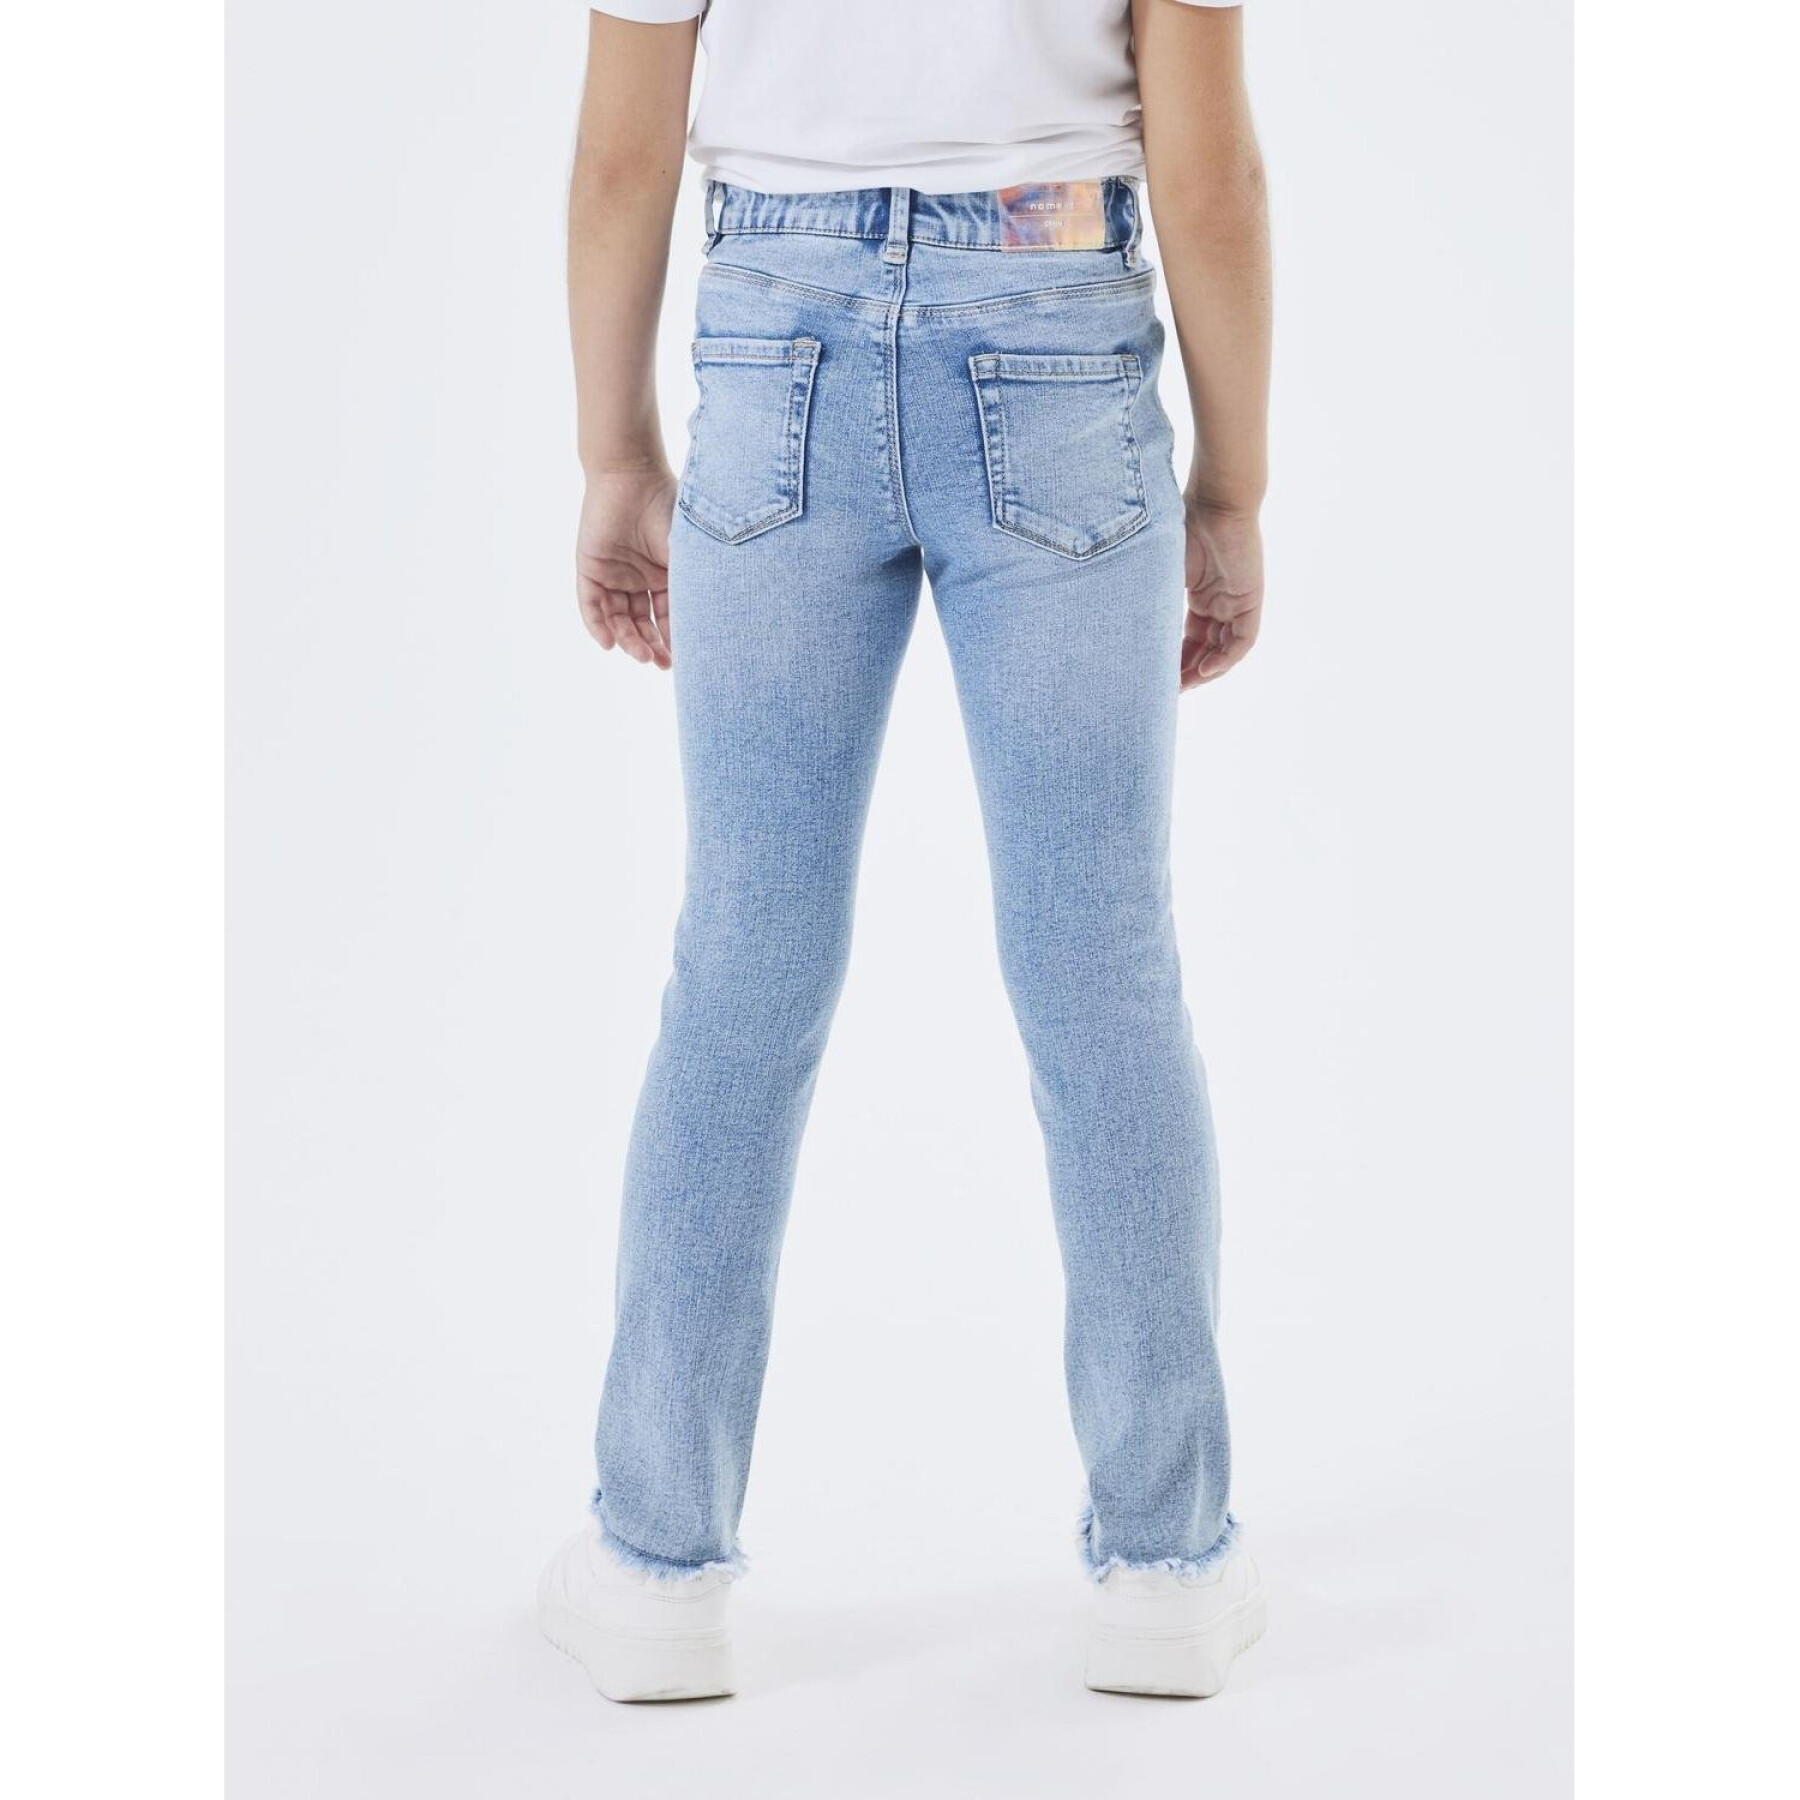 Skinny jeans voor babymeisjes Name it Polly 3173-AU